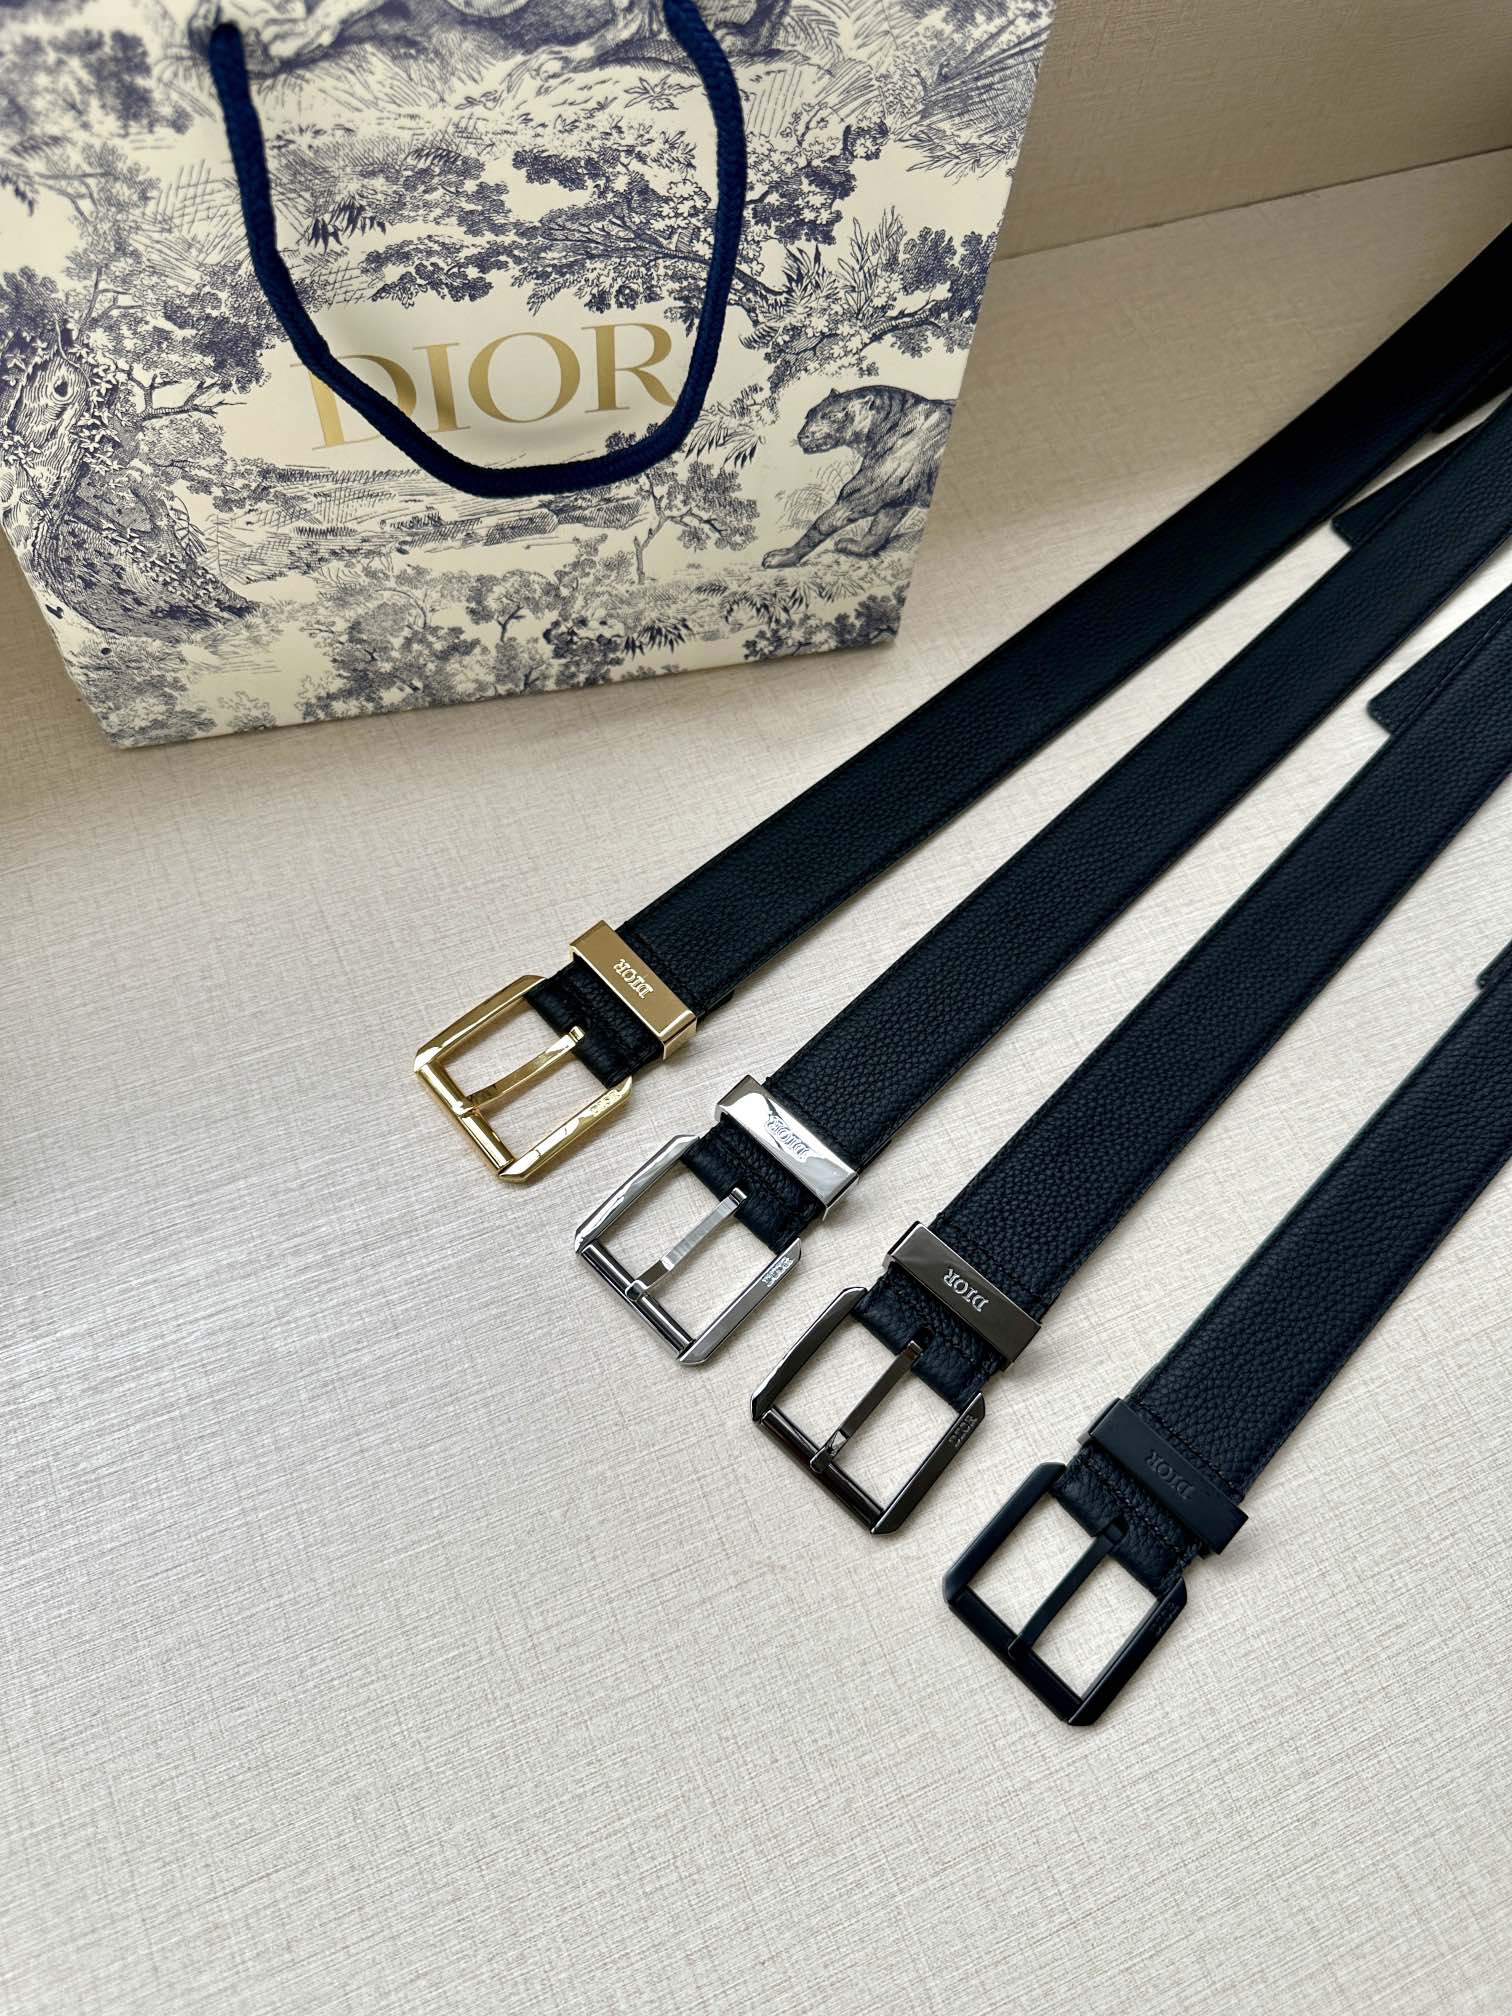 宽度3.5cmDior这款腰带采用黑色超迷你Oblique印花面料精心制作搭配金属覆层黄铜腰带扣彰显优雅